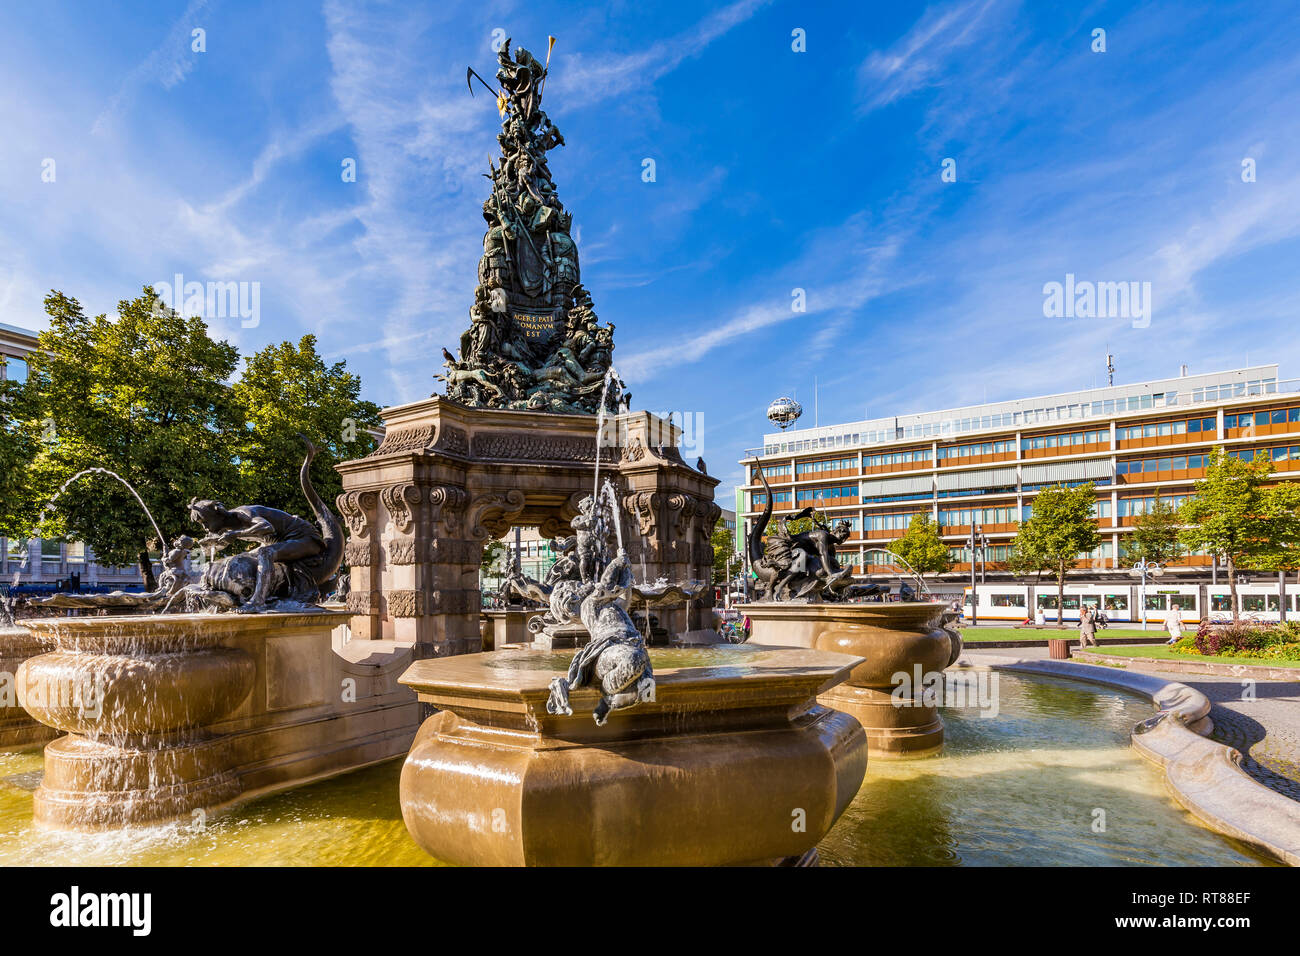 Alemania, Mannheim, fuente con Grupello Pirámide en Paradeplatz Foto de stock